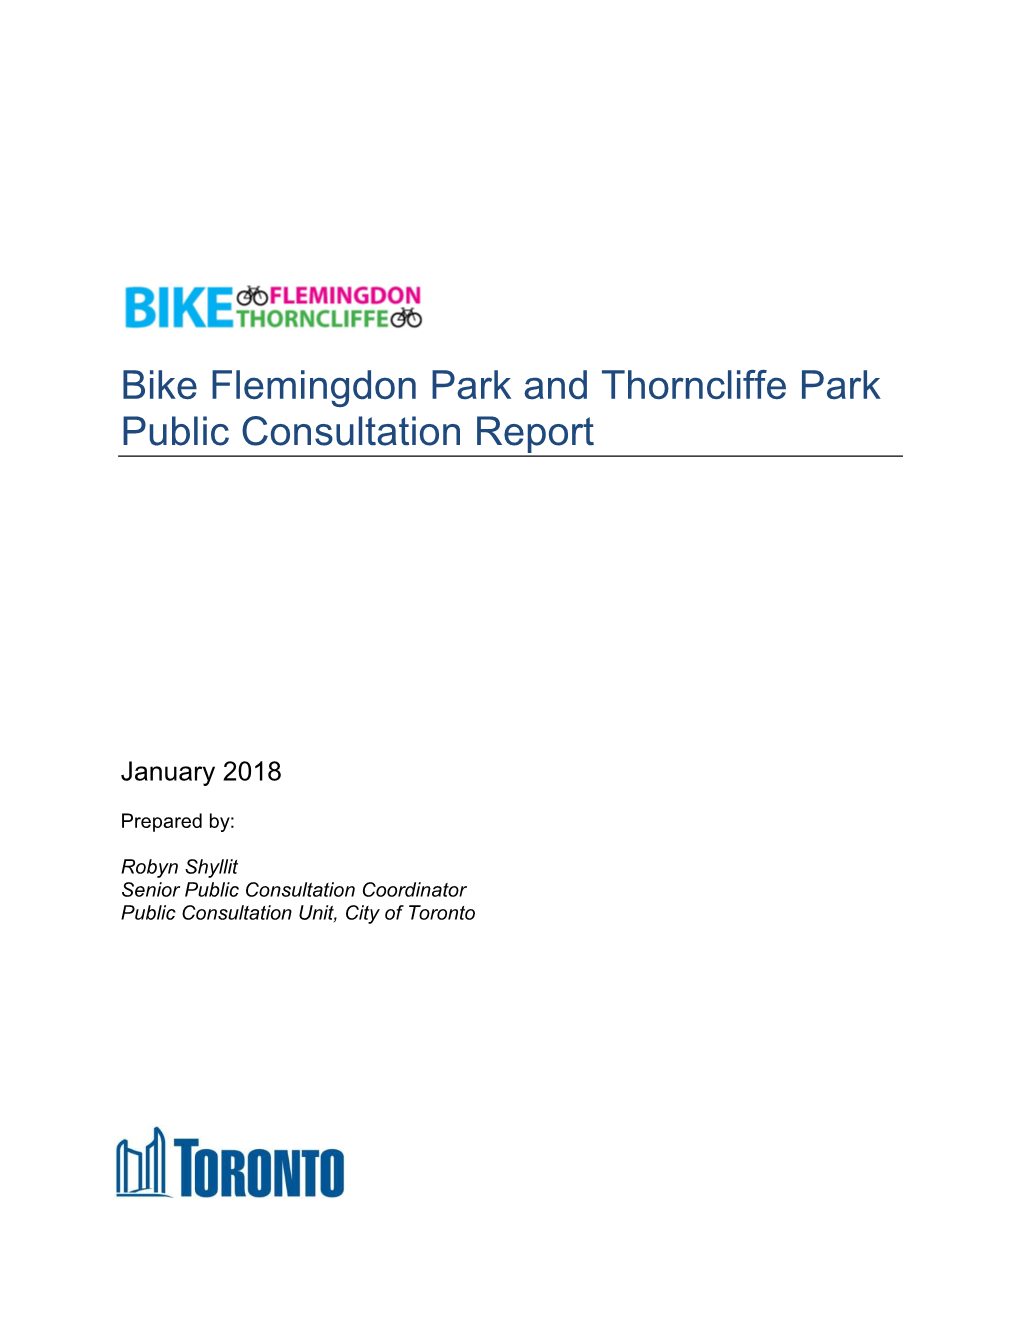 Bike Flemingdon Park and Thorncliffe Park Public Consultation Report